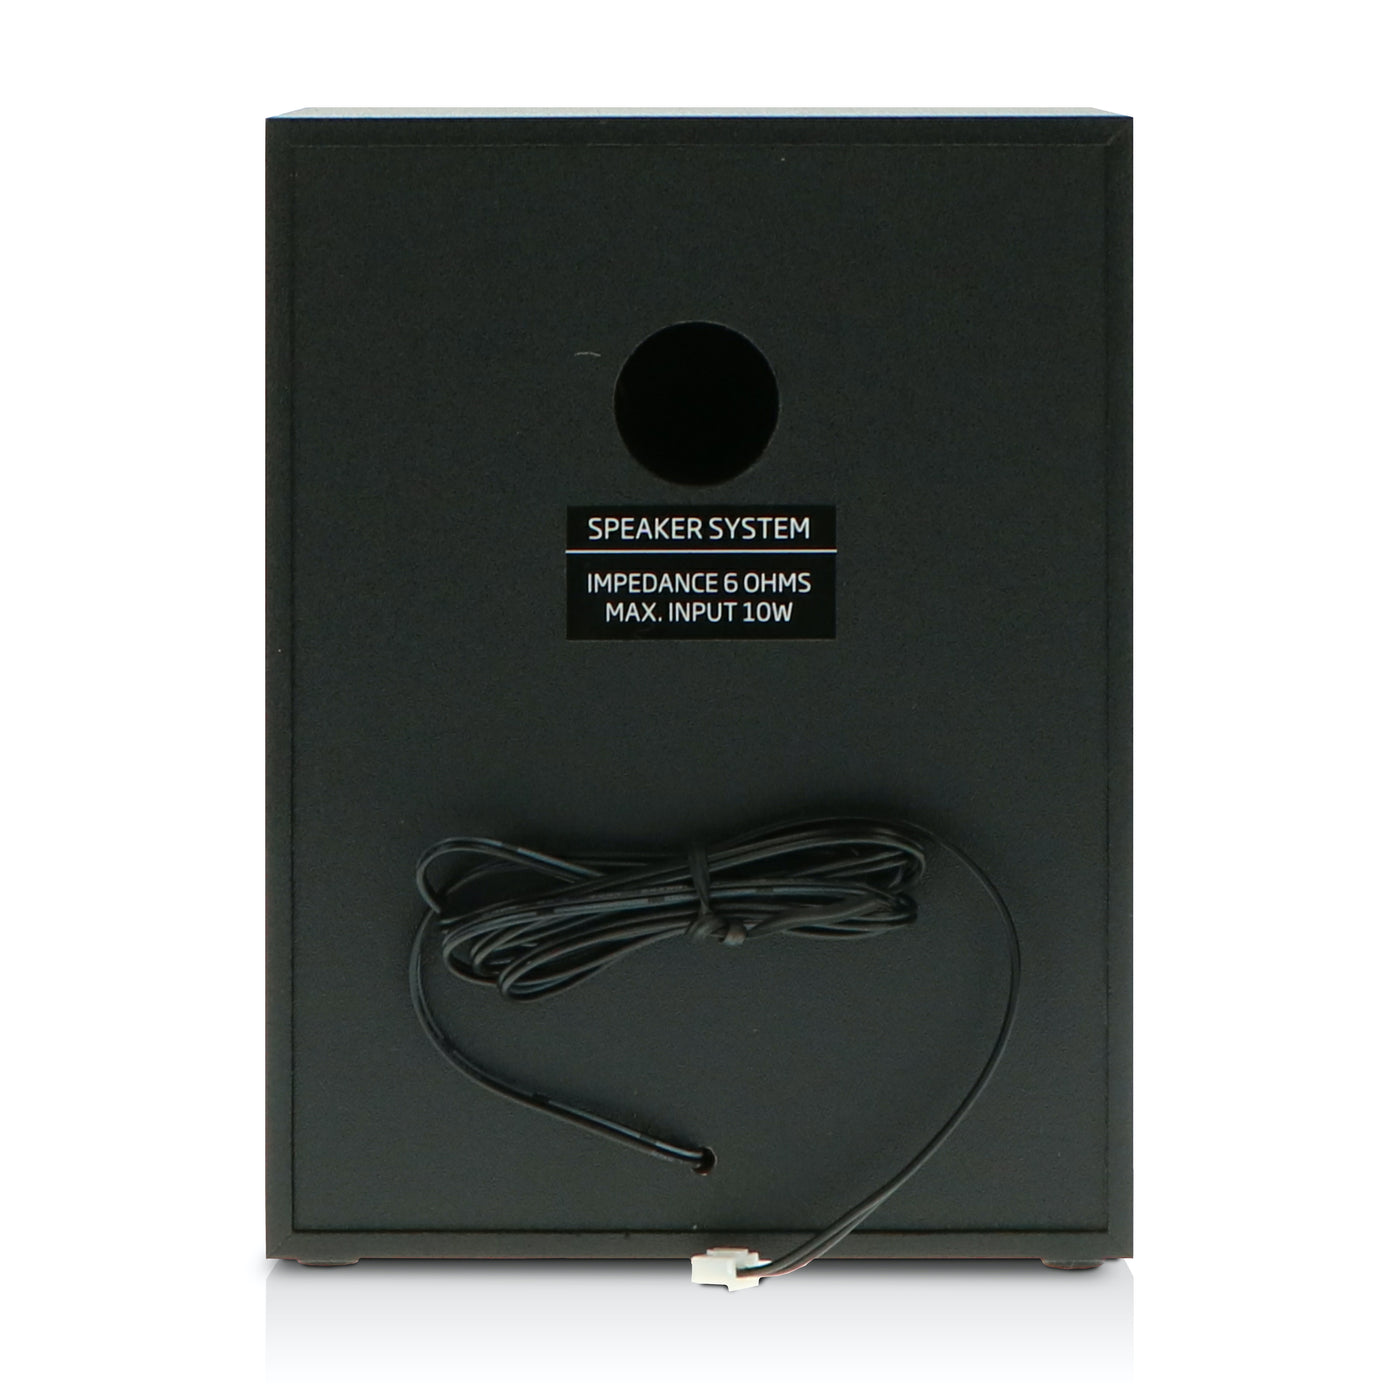 Lenco MC-150 - Chaîne stéréo avec radio DAB+/FM, lecteur CD, connexion Bluetooth® et prise USB - Noir